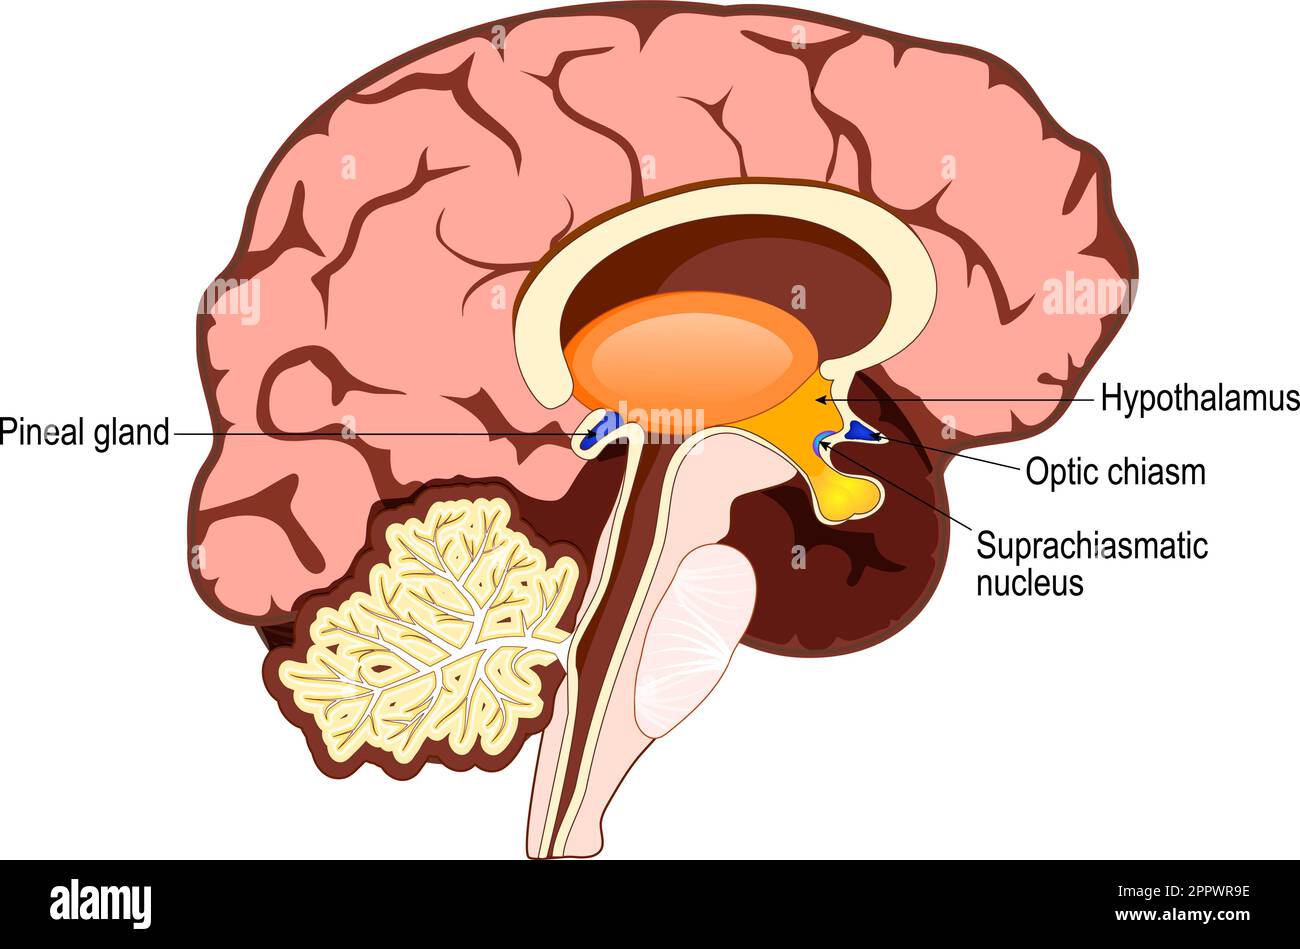 Cervello umano con parte del sistema limbico e corteccia cerebrale, nucleo suprachiasmatico, chiasmo ottico, Ipotalamo, E Pineal Gland Illustrazione Vettoriale